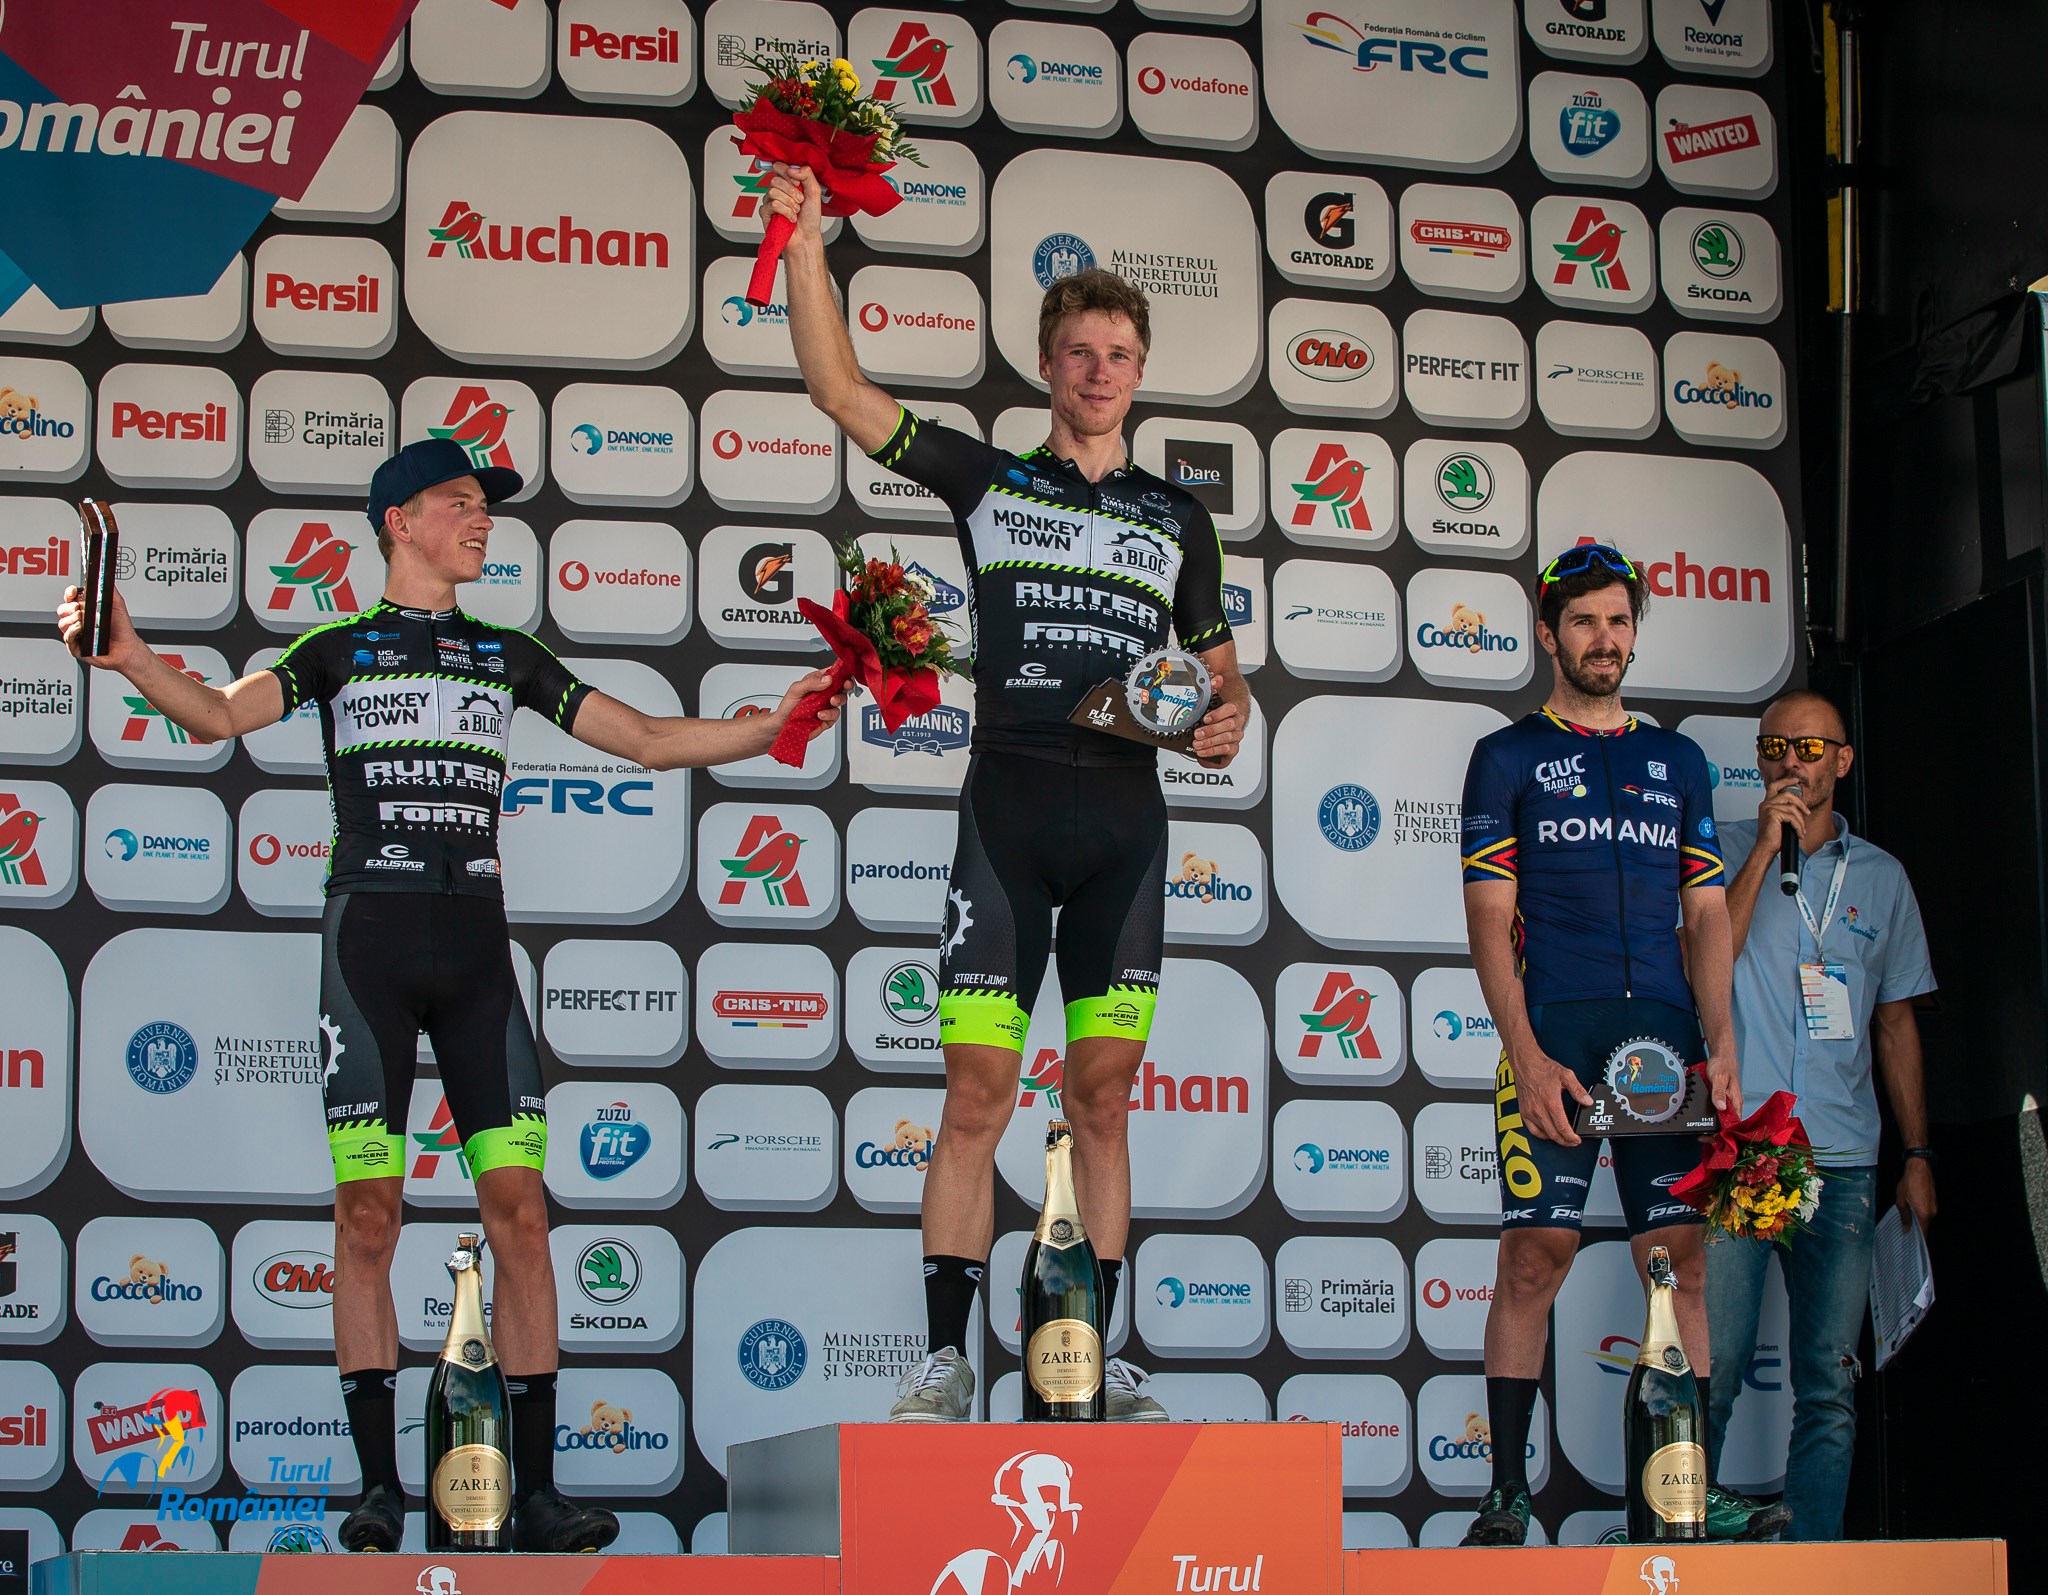 Turul Romaniei 2019 - podium etapa 1